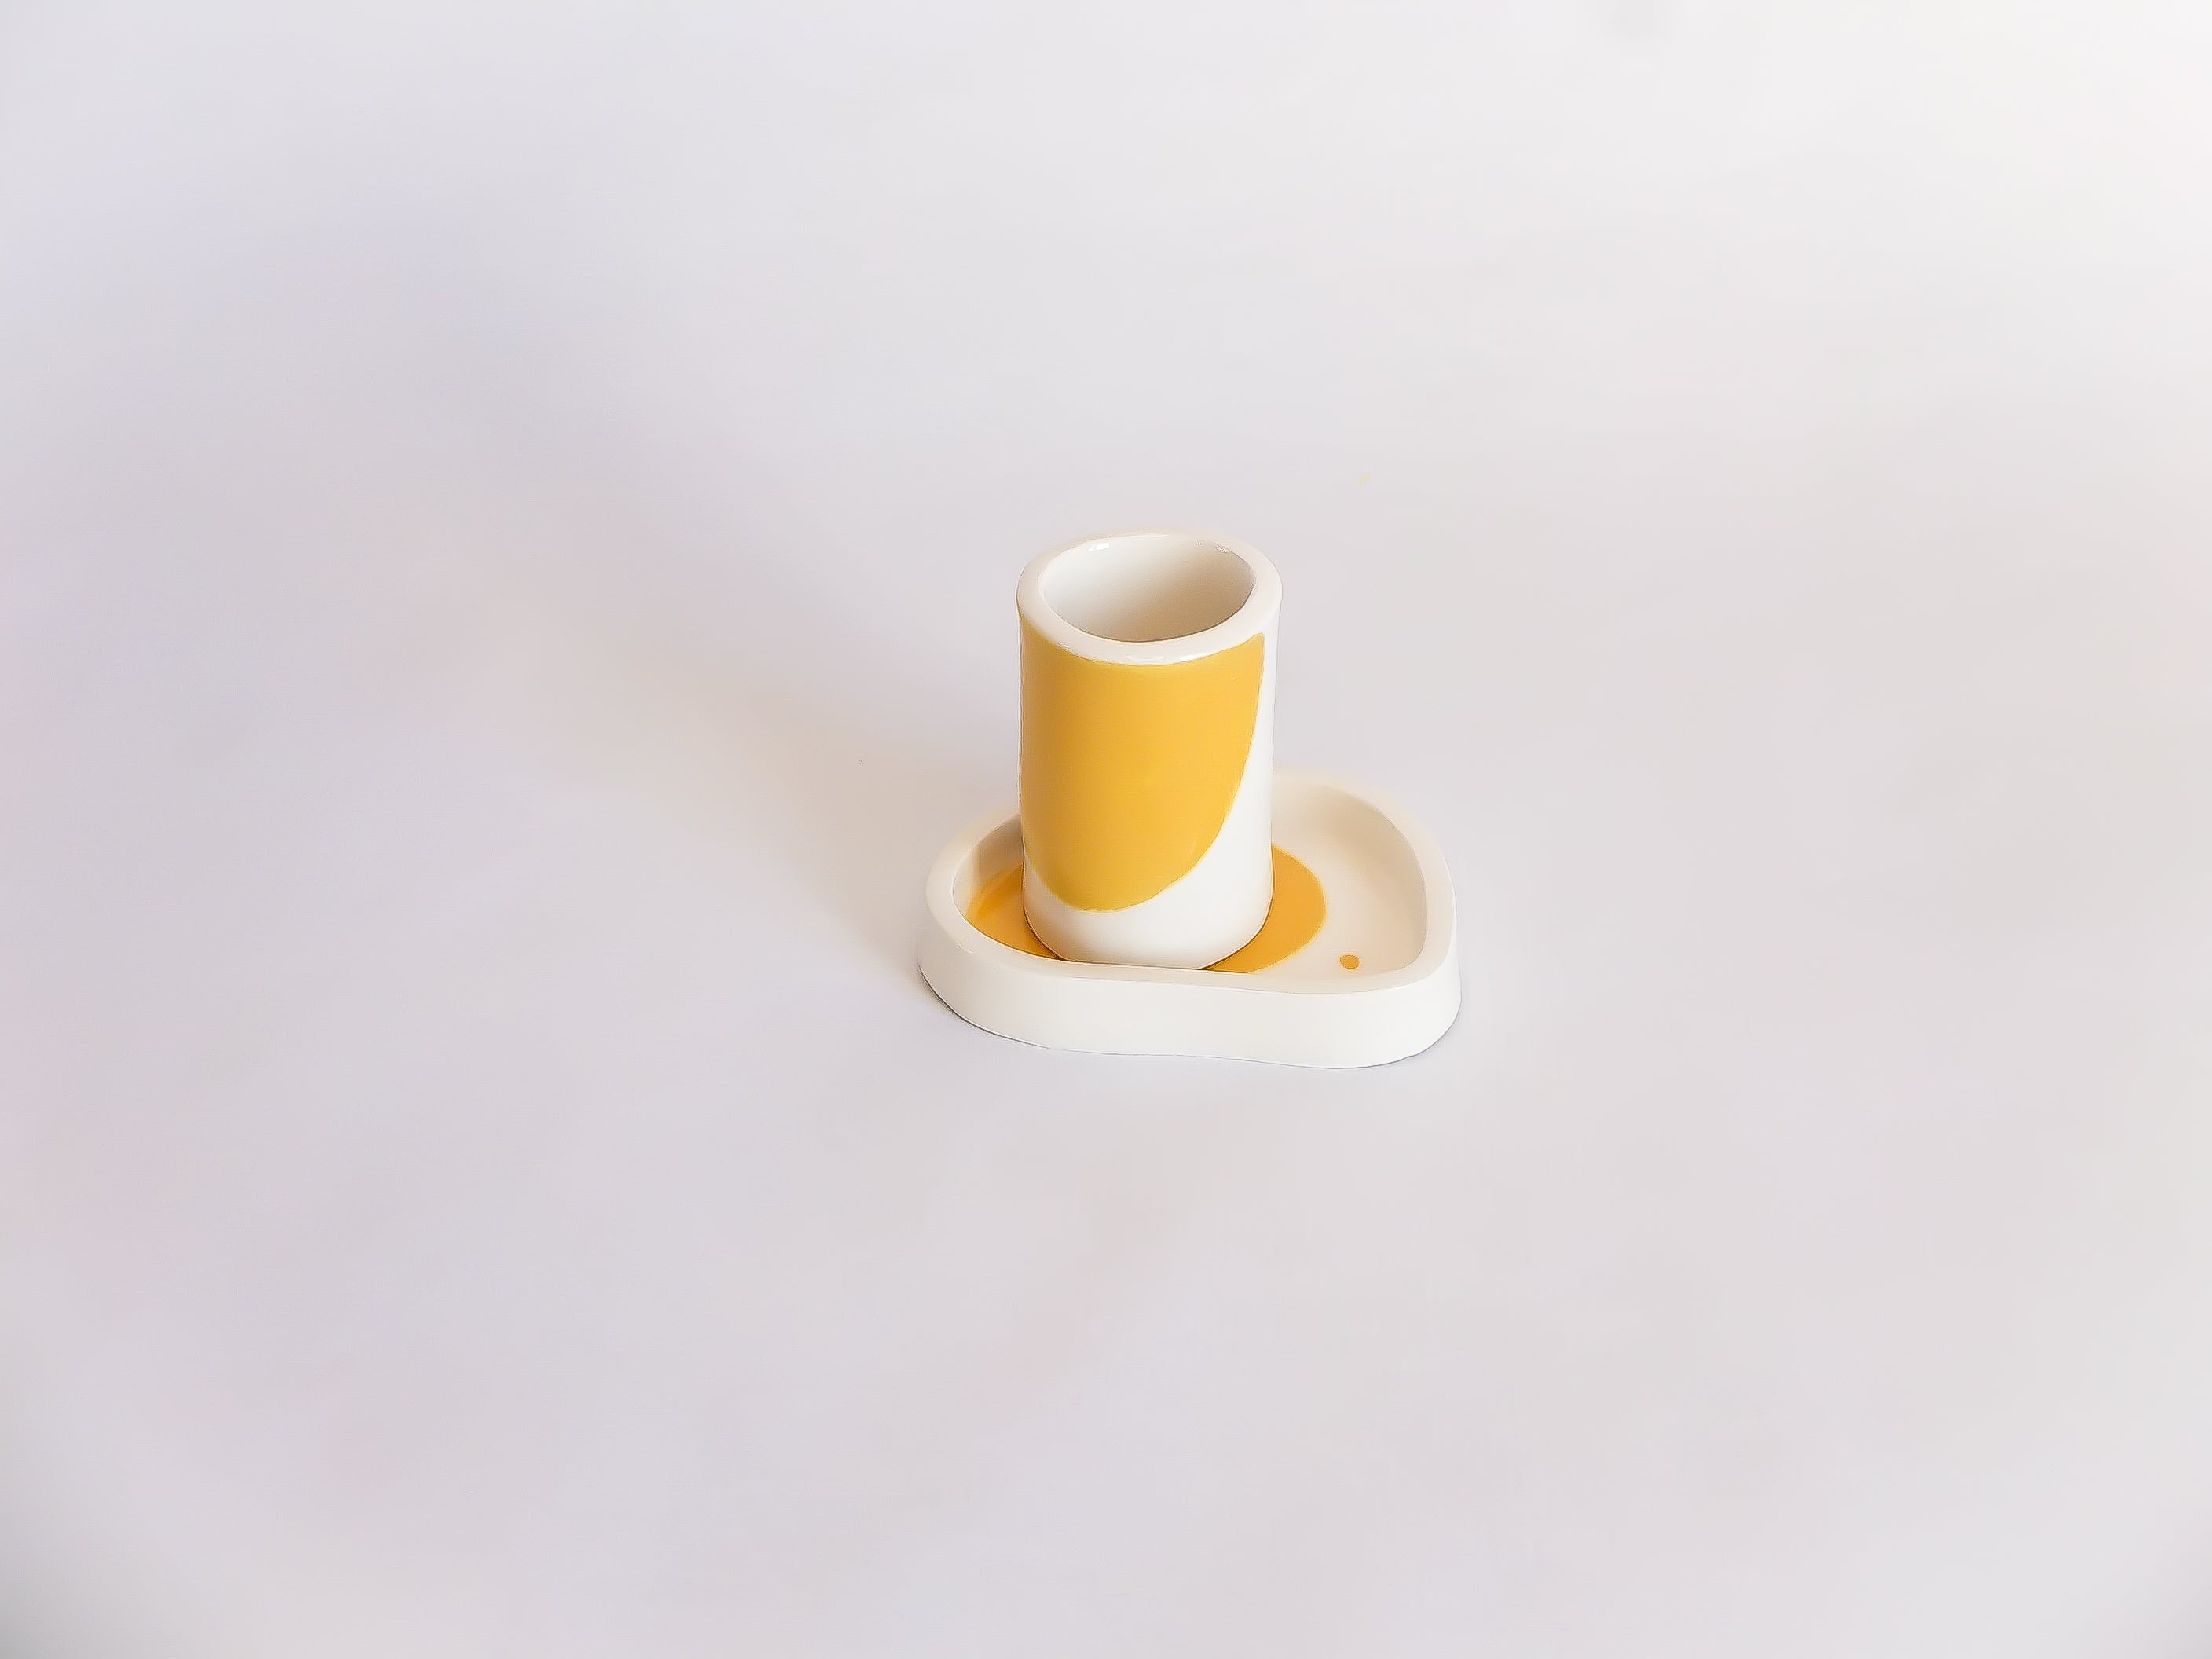 Petite tasse à café et coupelle jaunes fabriquées et peintes à la main à Lisbonne